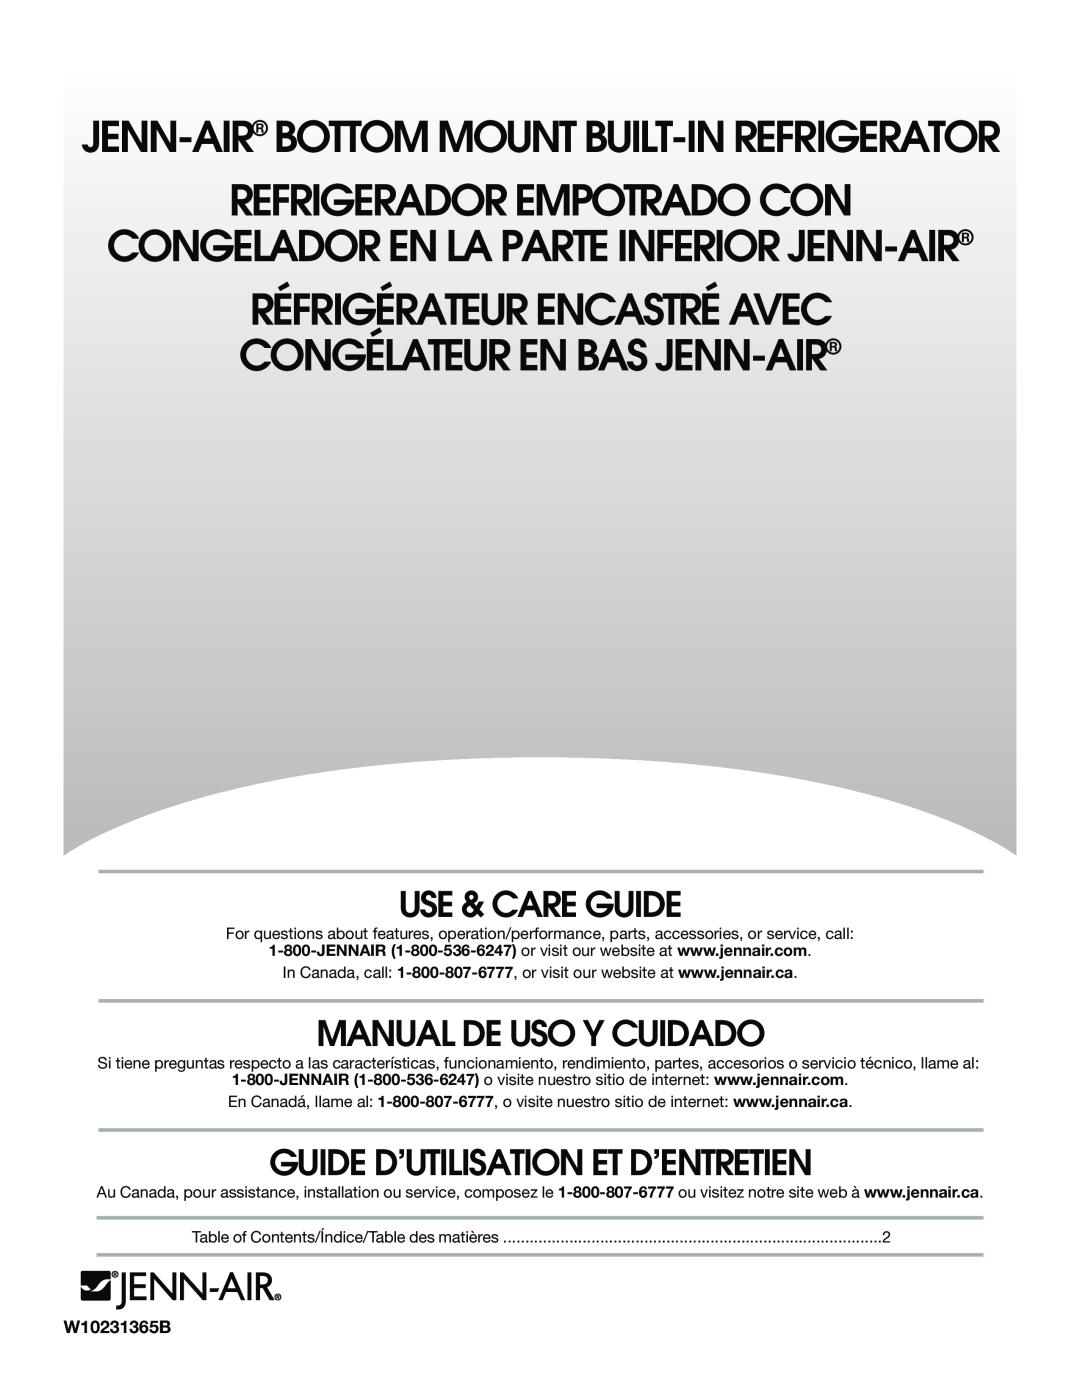 Jenn-Air W10231365B manual Use & Care Guide, Manual De Uso Y Cuidado, Guide D’Utilisation Et D’Entretien 